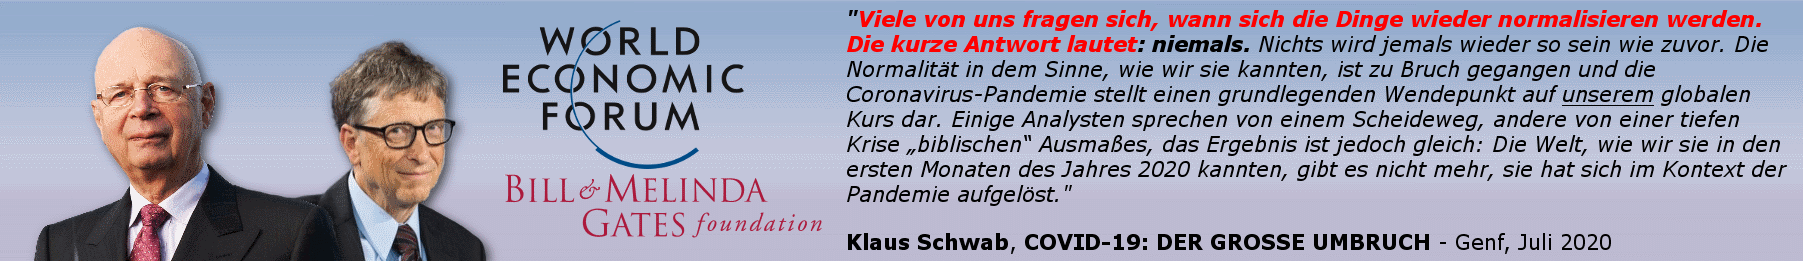 widerstand_covid-19_bundesrat_klaus-schwab_bill-gates